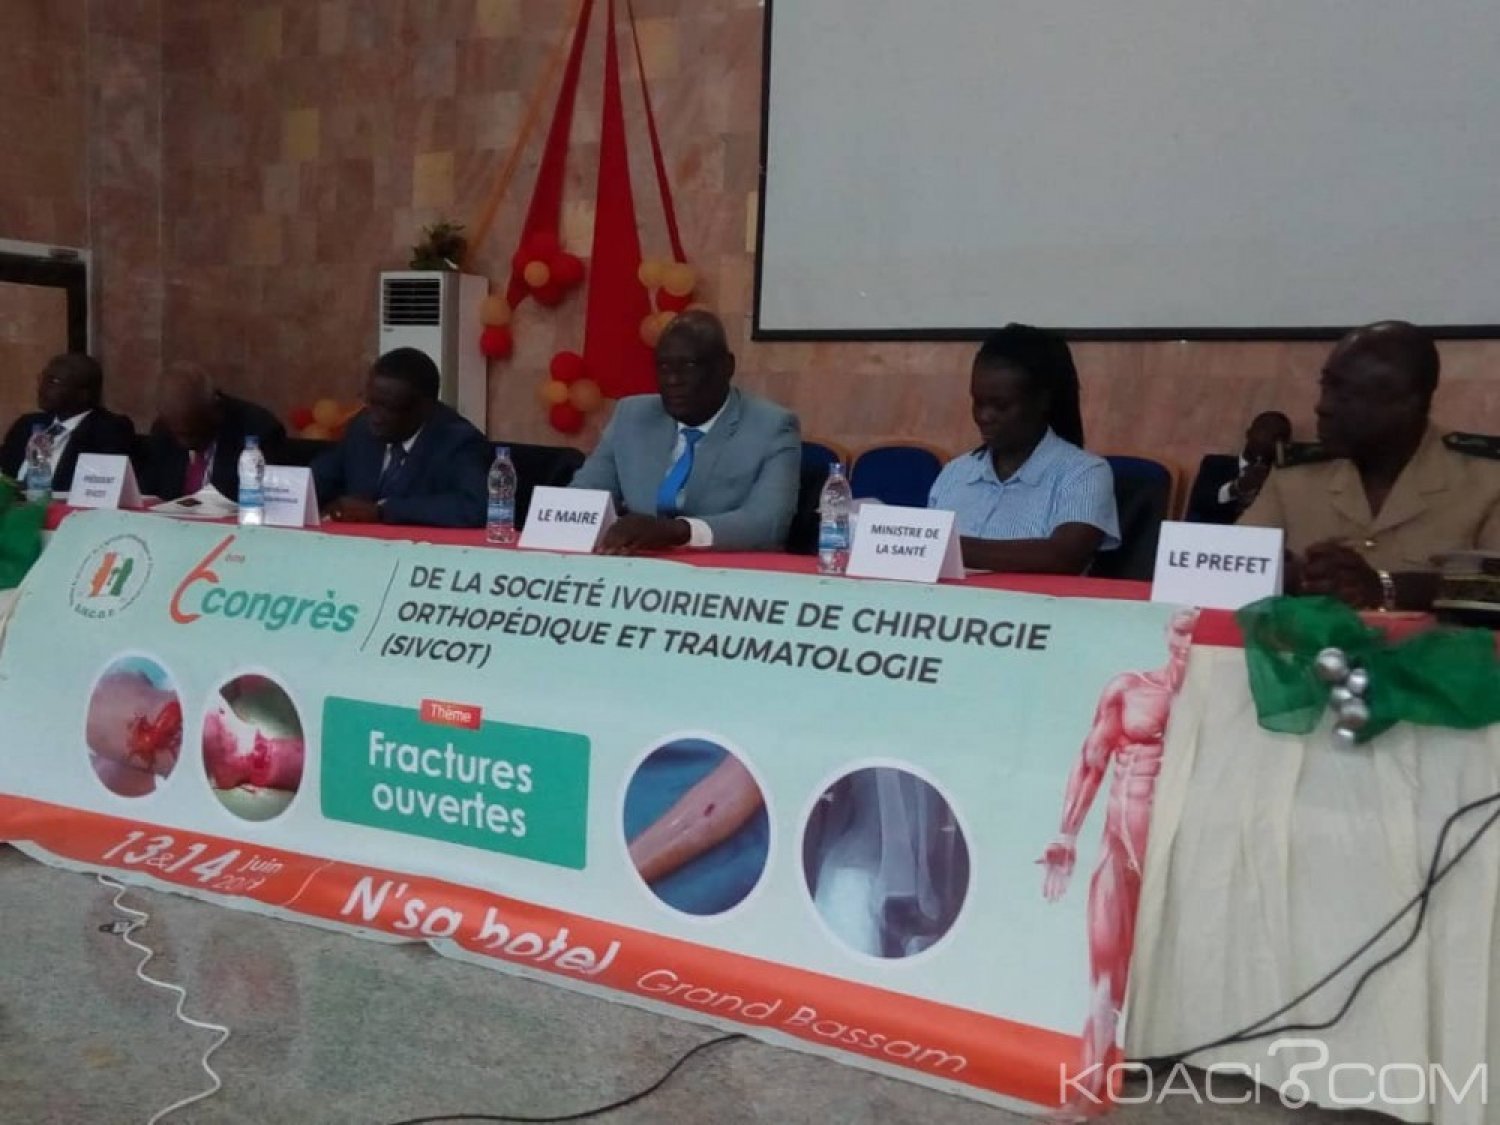 Côte d'Ivoire: Les fractures ouvertes au centre des échanges du 6ème  congrès de la SIVCOT de Grand-Bassam